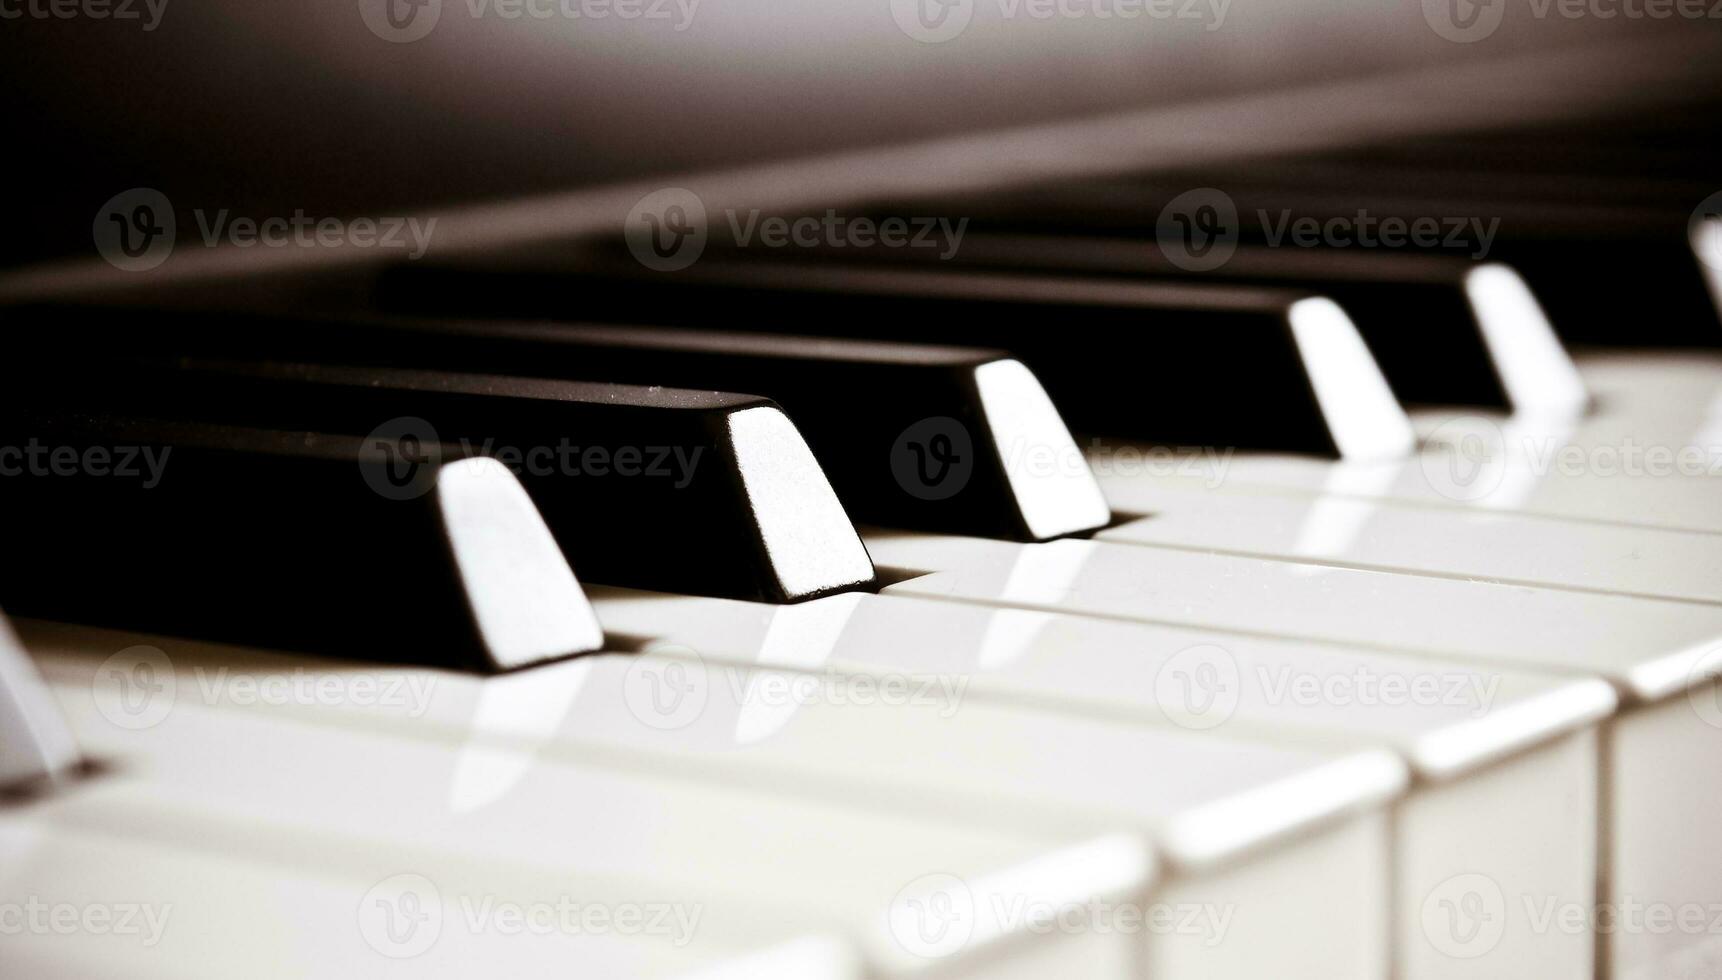 Piano Keys   Musical Harmony photo